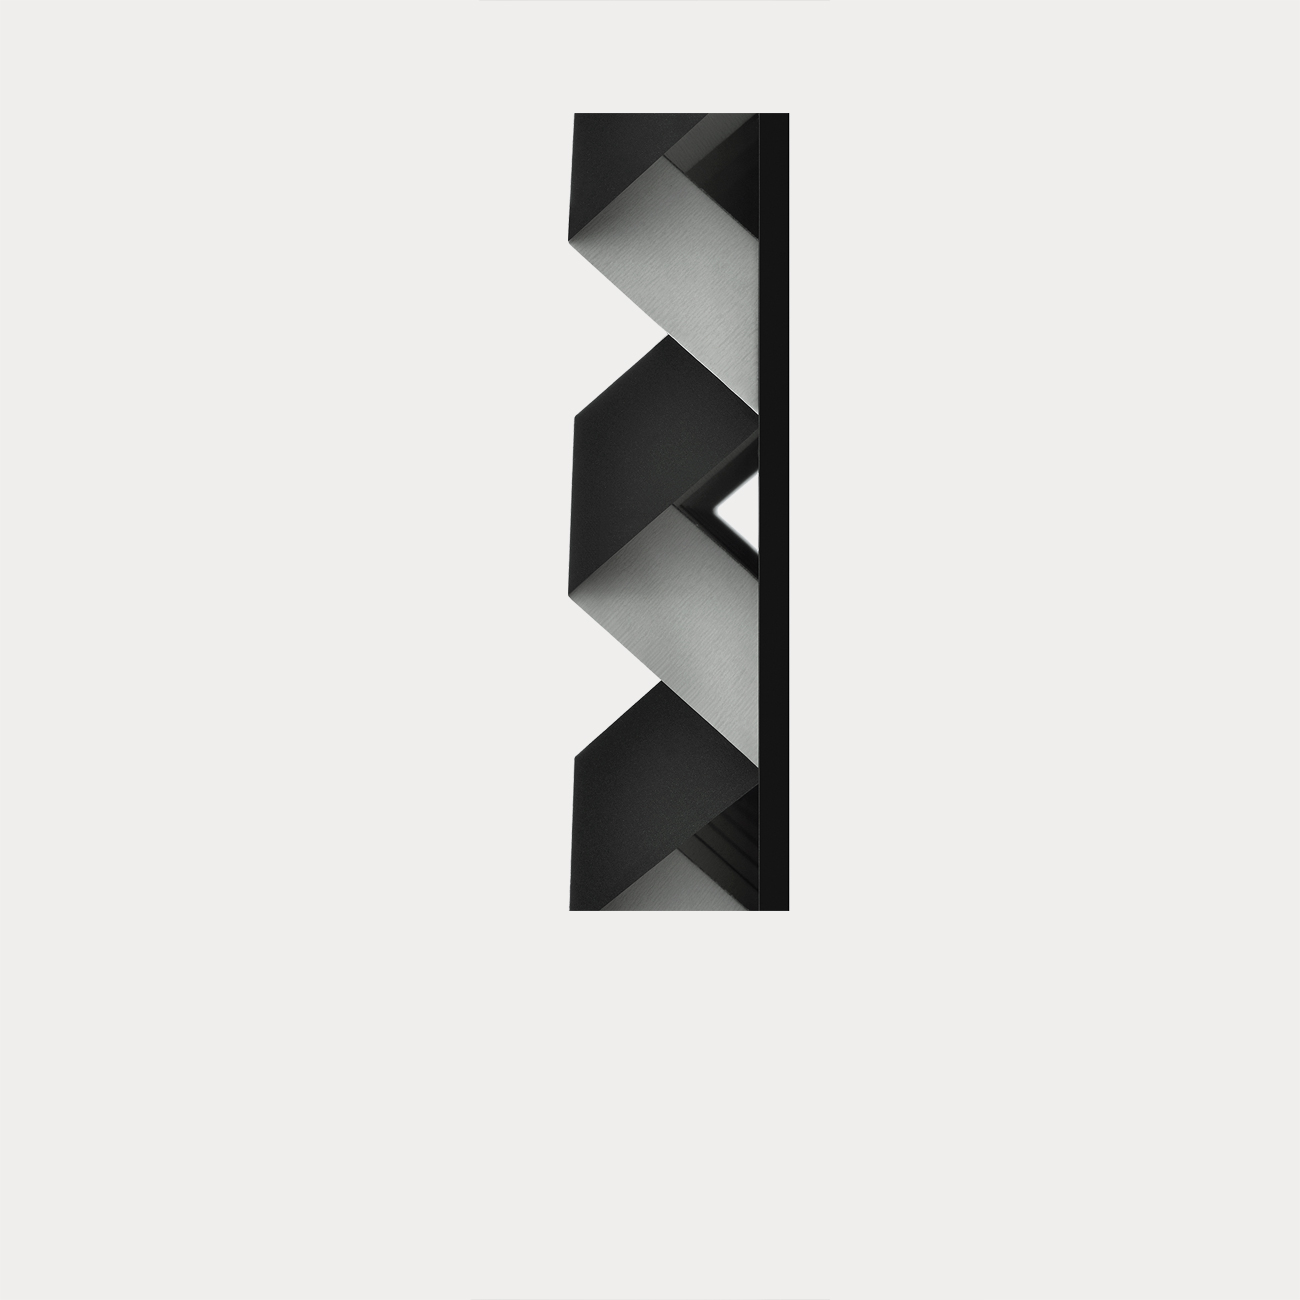 Foldart Paperfold schwarz-weiß. Detail. Basis Acryl, schwarz